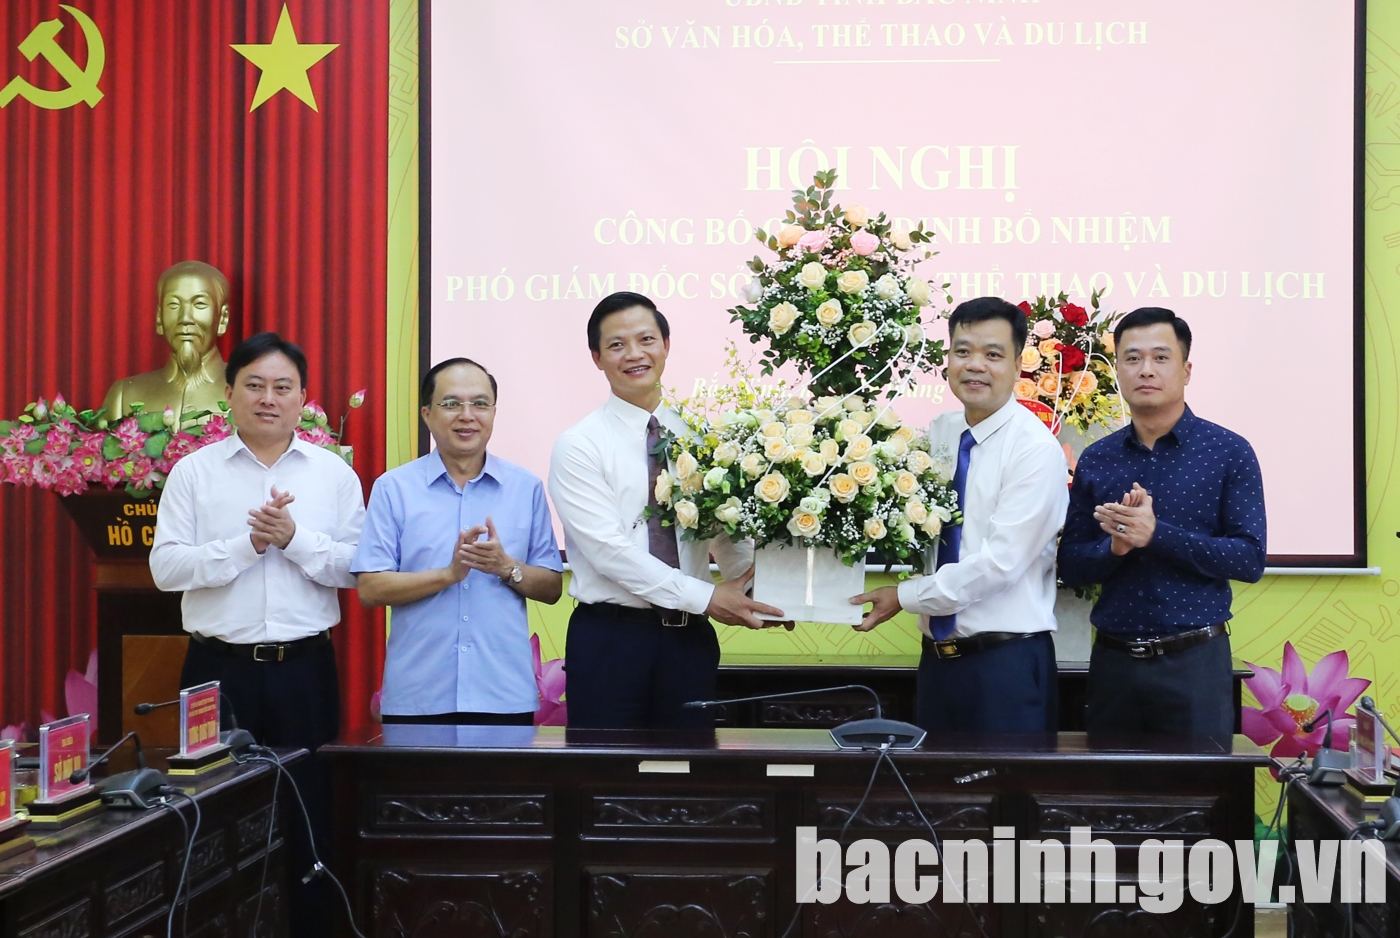 Bổ nhiệm Phó Giám đốc Sở Văn hóa, Thể thao và Du lịch tỉnh Bắc Ninh